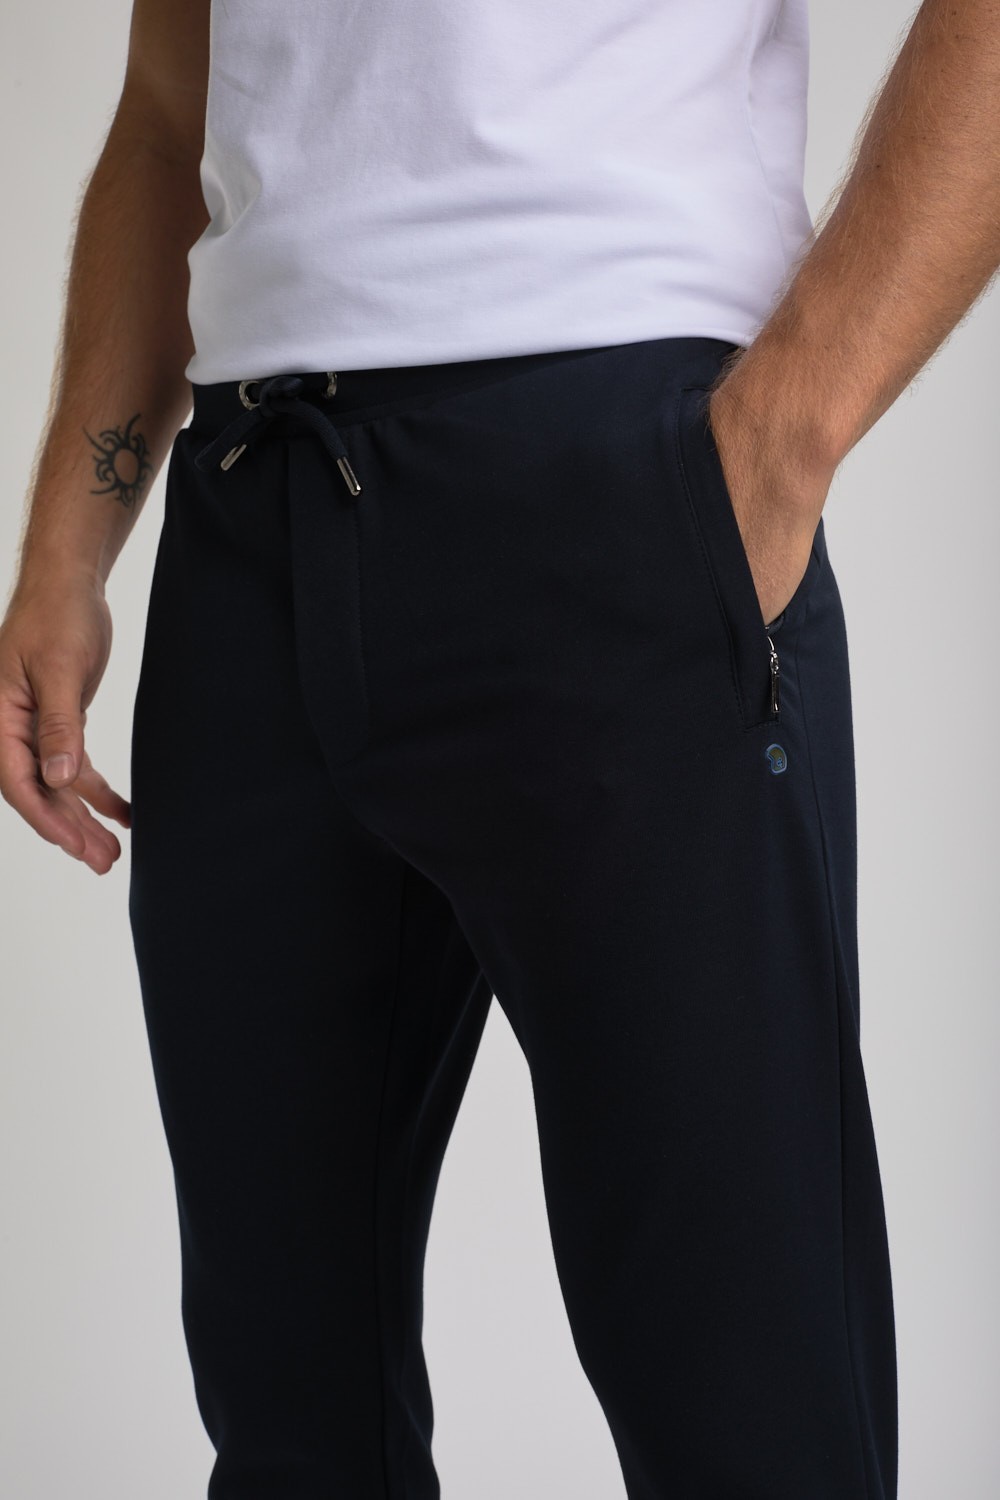 pantalon jogging bleu marine avec cordon de serrage à la taille